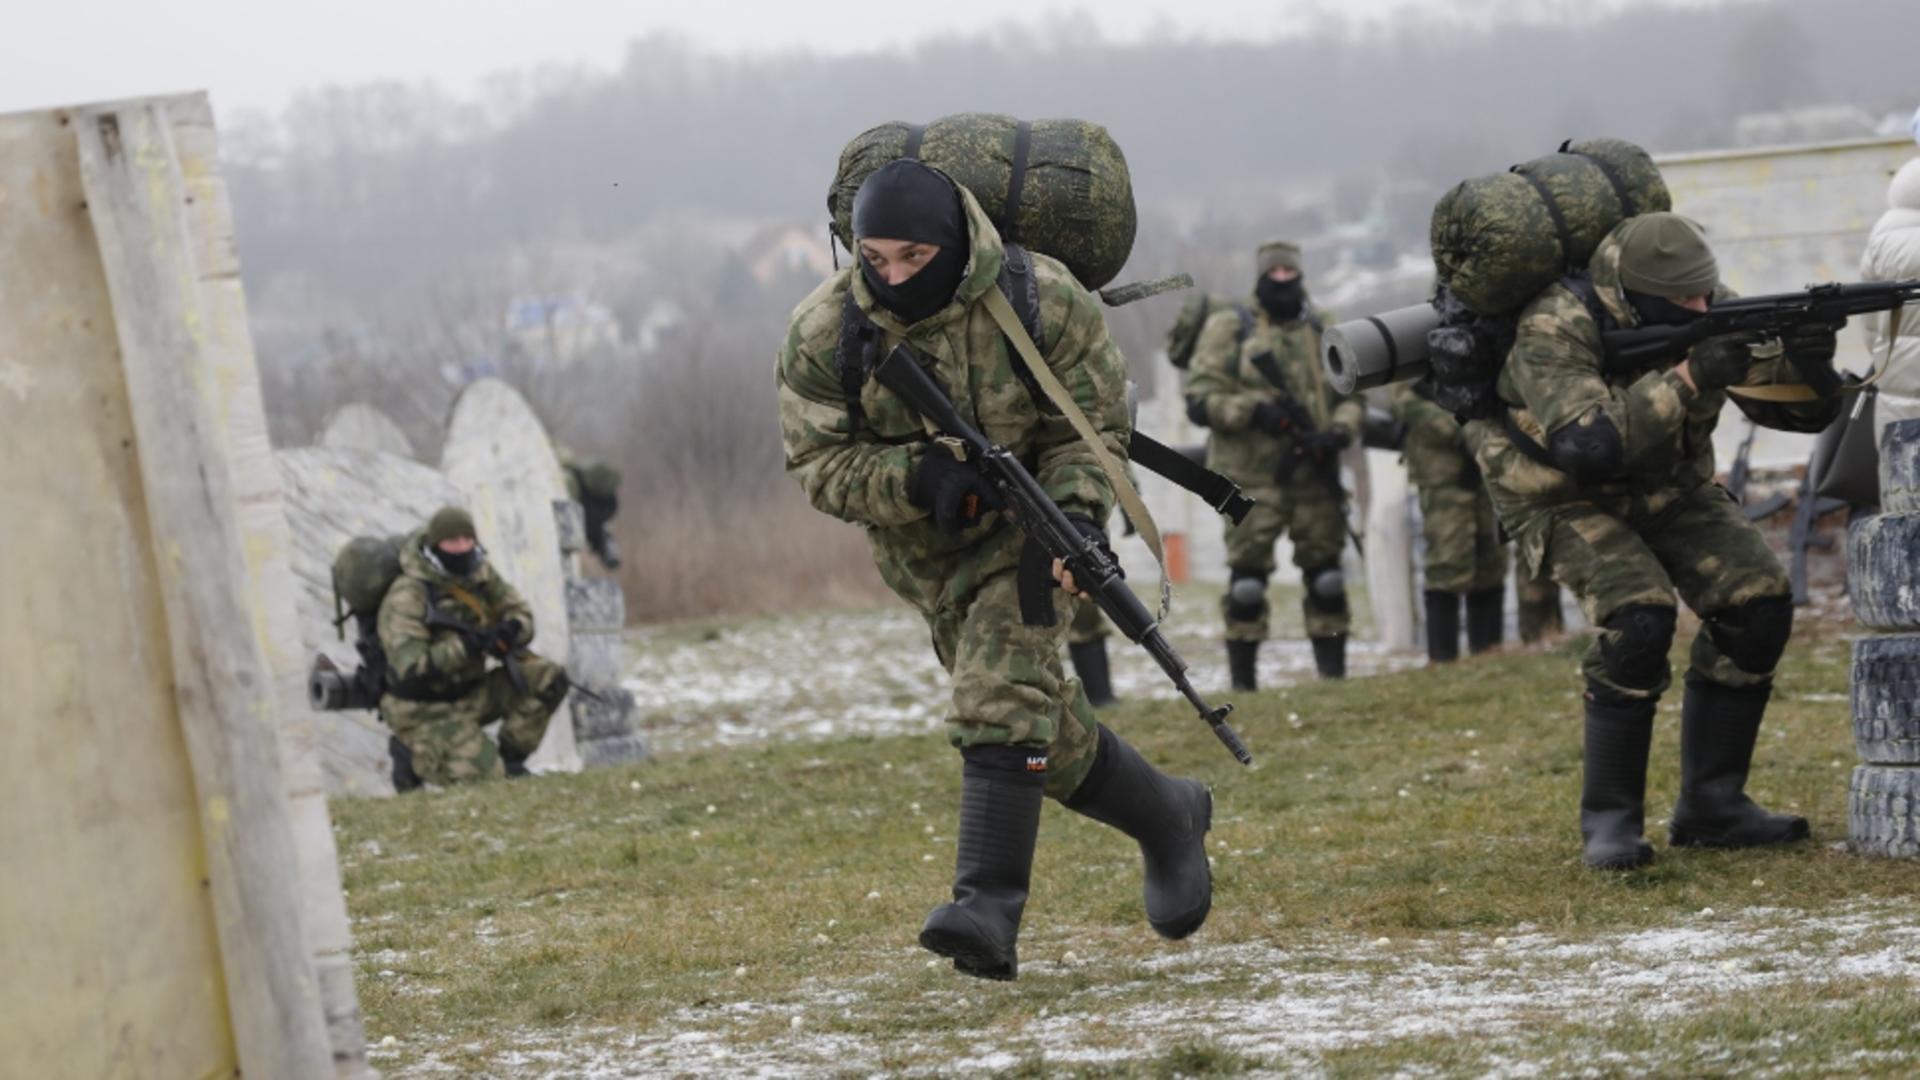 Sabotorii ruși care luptă de partea Ucrainei au început o invazie în Belgorod.  Kremlinul a instituit alerta antitero împotriva lor